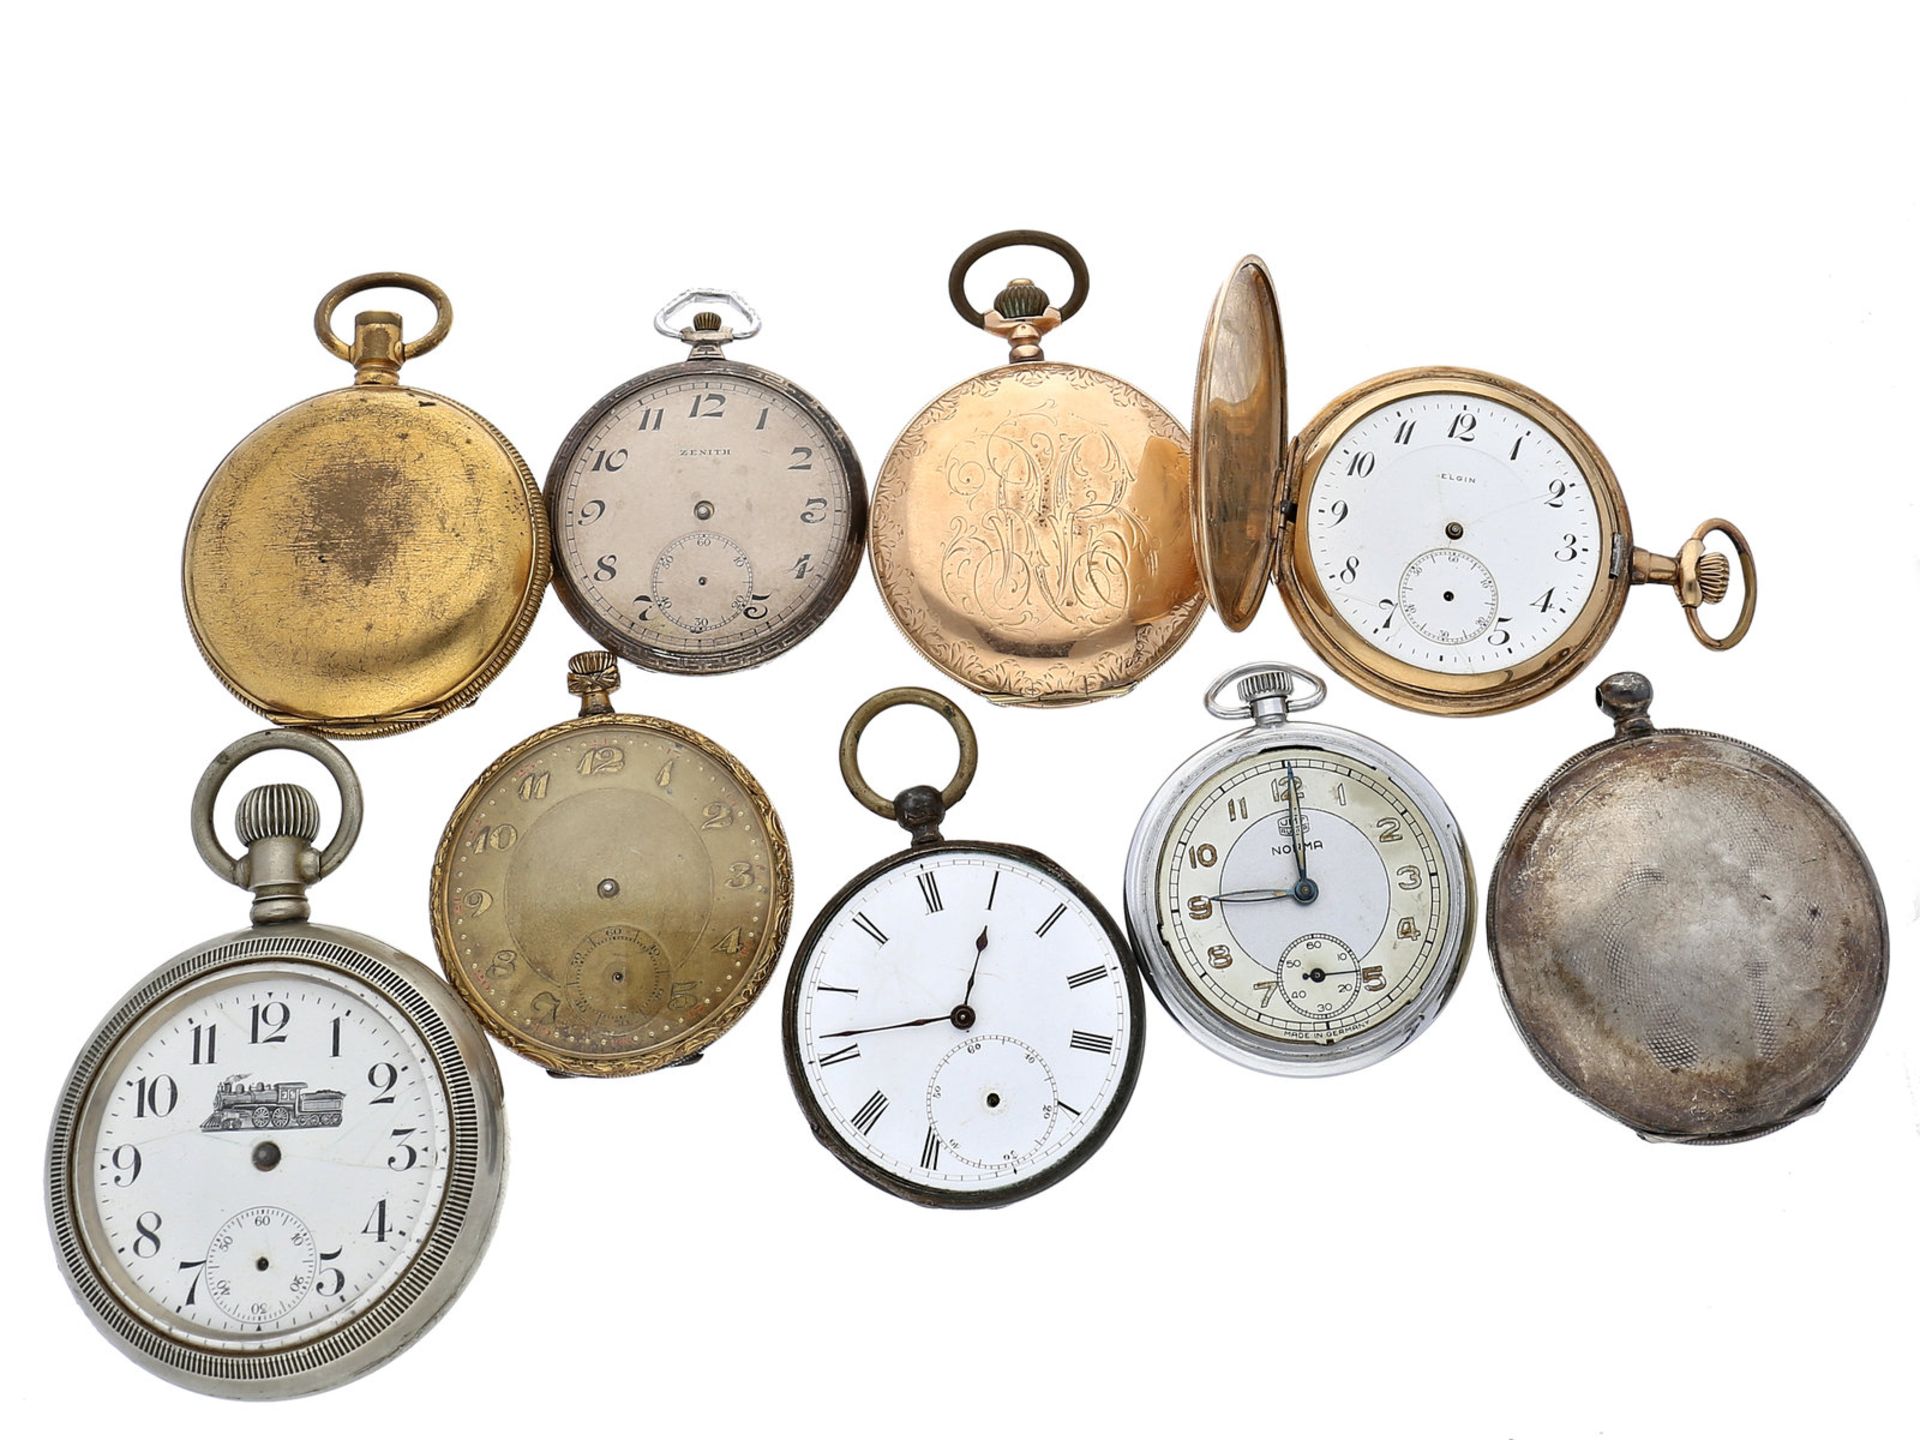 Taschenuhren: Konvolut alter Taschenuhren, ca.1870-1940, teilweise defekt9 Stück, unterschiedliche